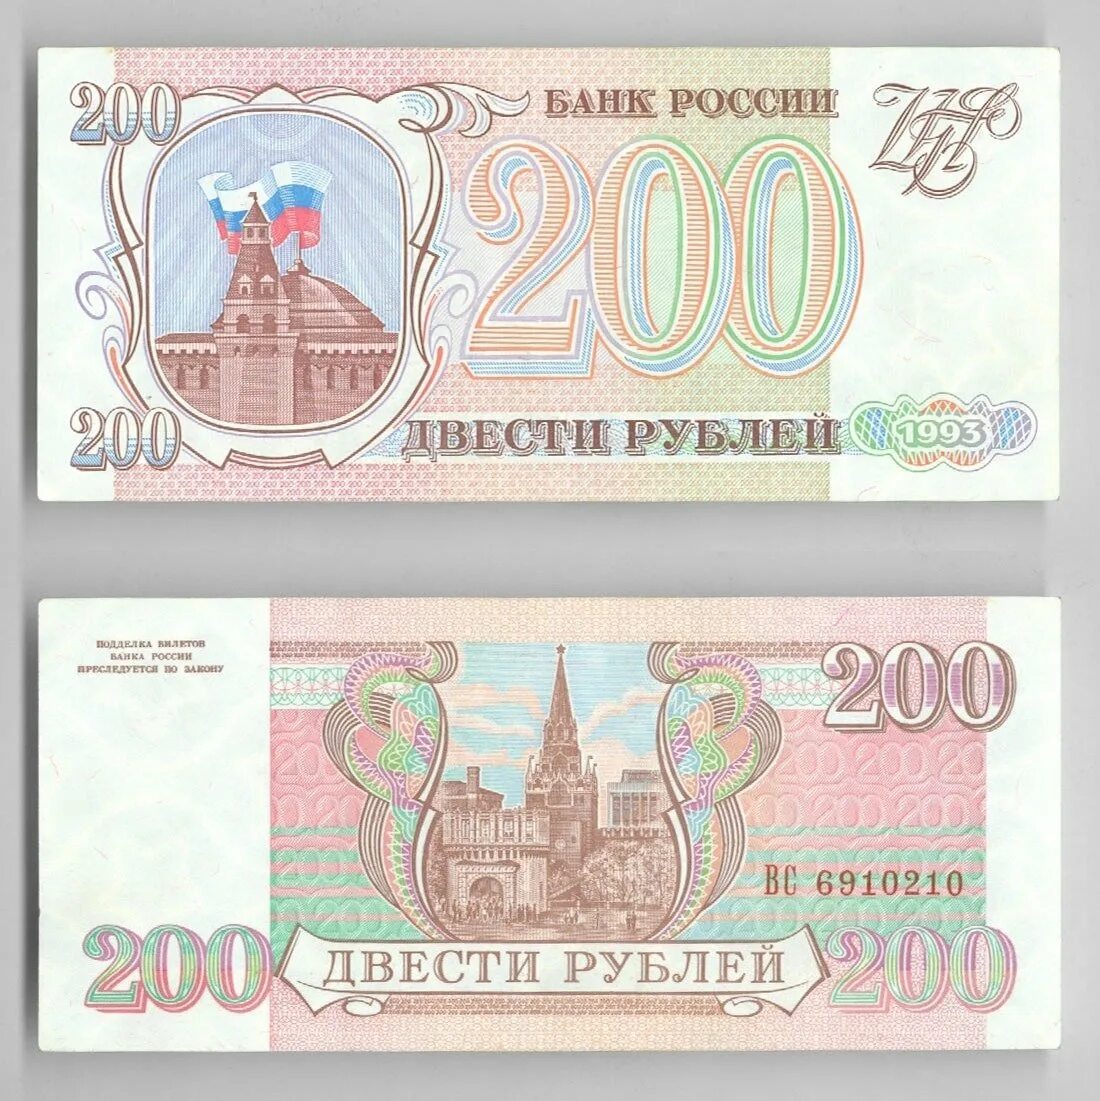 200 рублей 90. Купюра 200 рублей 1993. Банкнота 200 рублей 1993. 200 Рублей 1993 года. Купюра 200 рублей 1993 года.